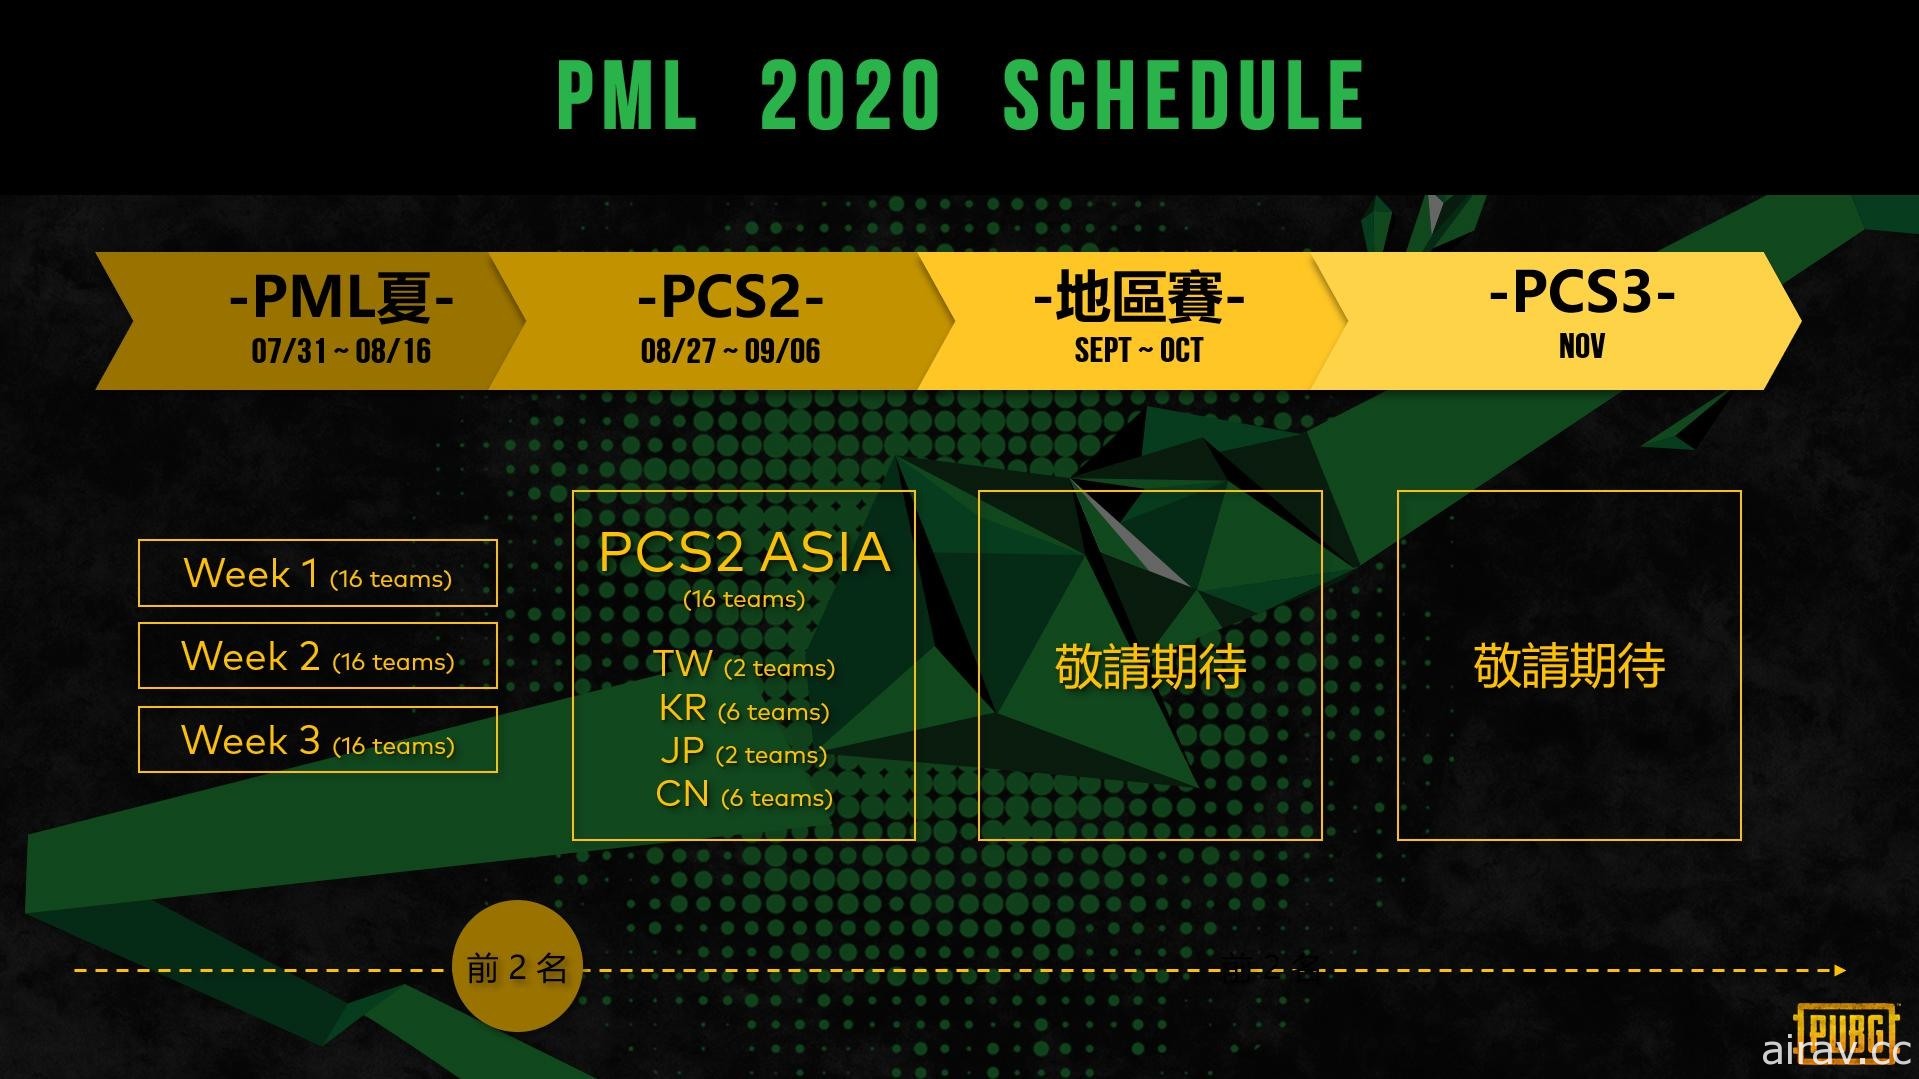 《絕地求生》2020 PML 夏季賽今晚邁入最後賽程 四大賽區 PCS2 洲際賽 8 月底登場